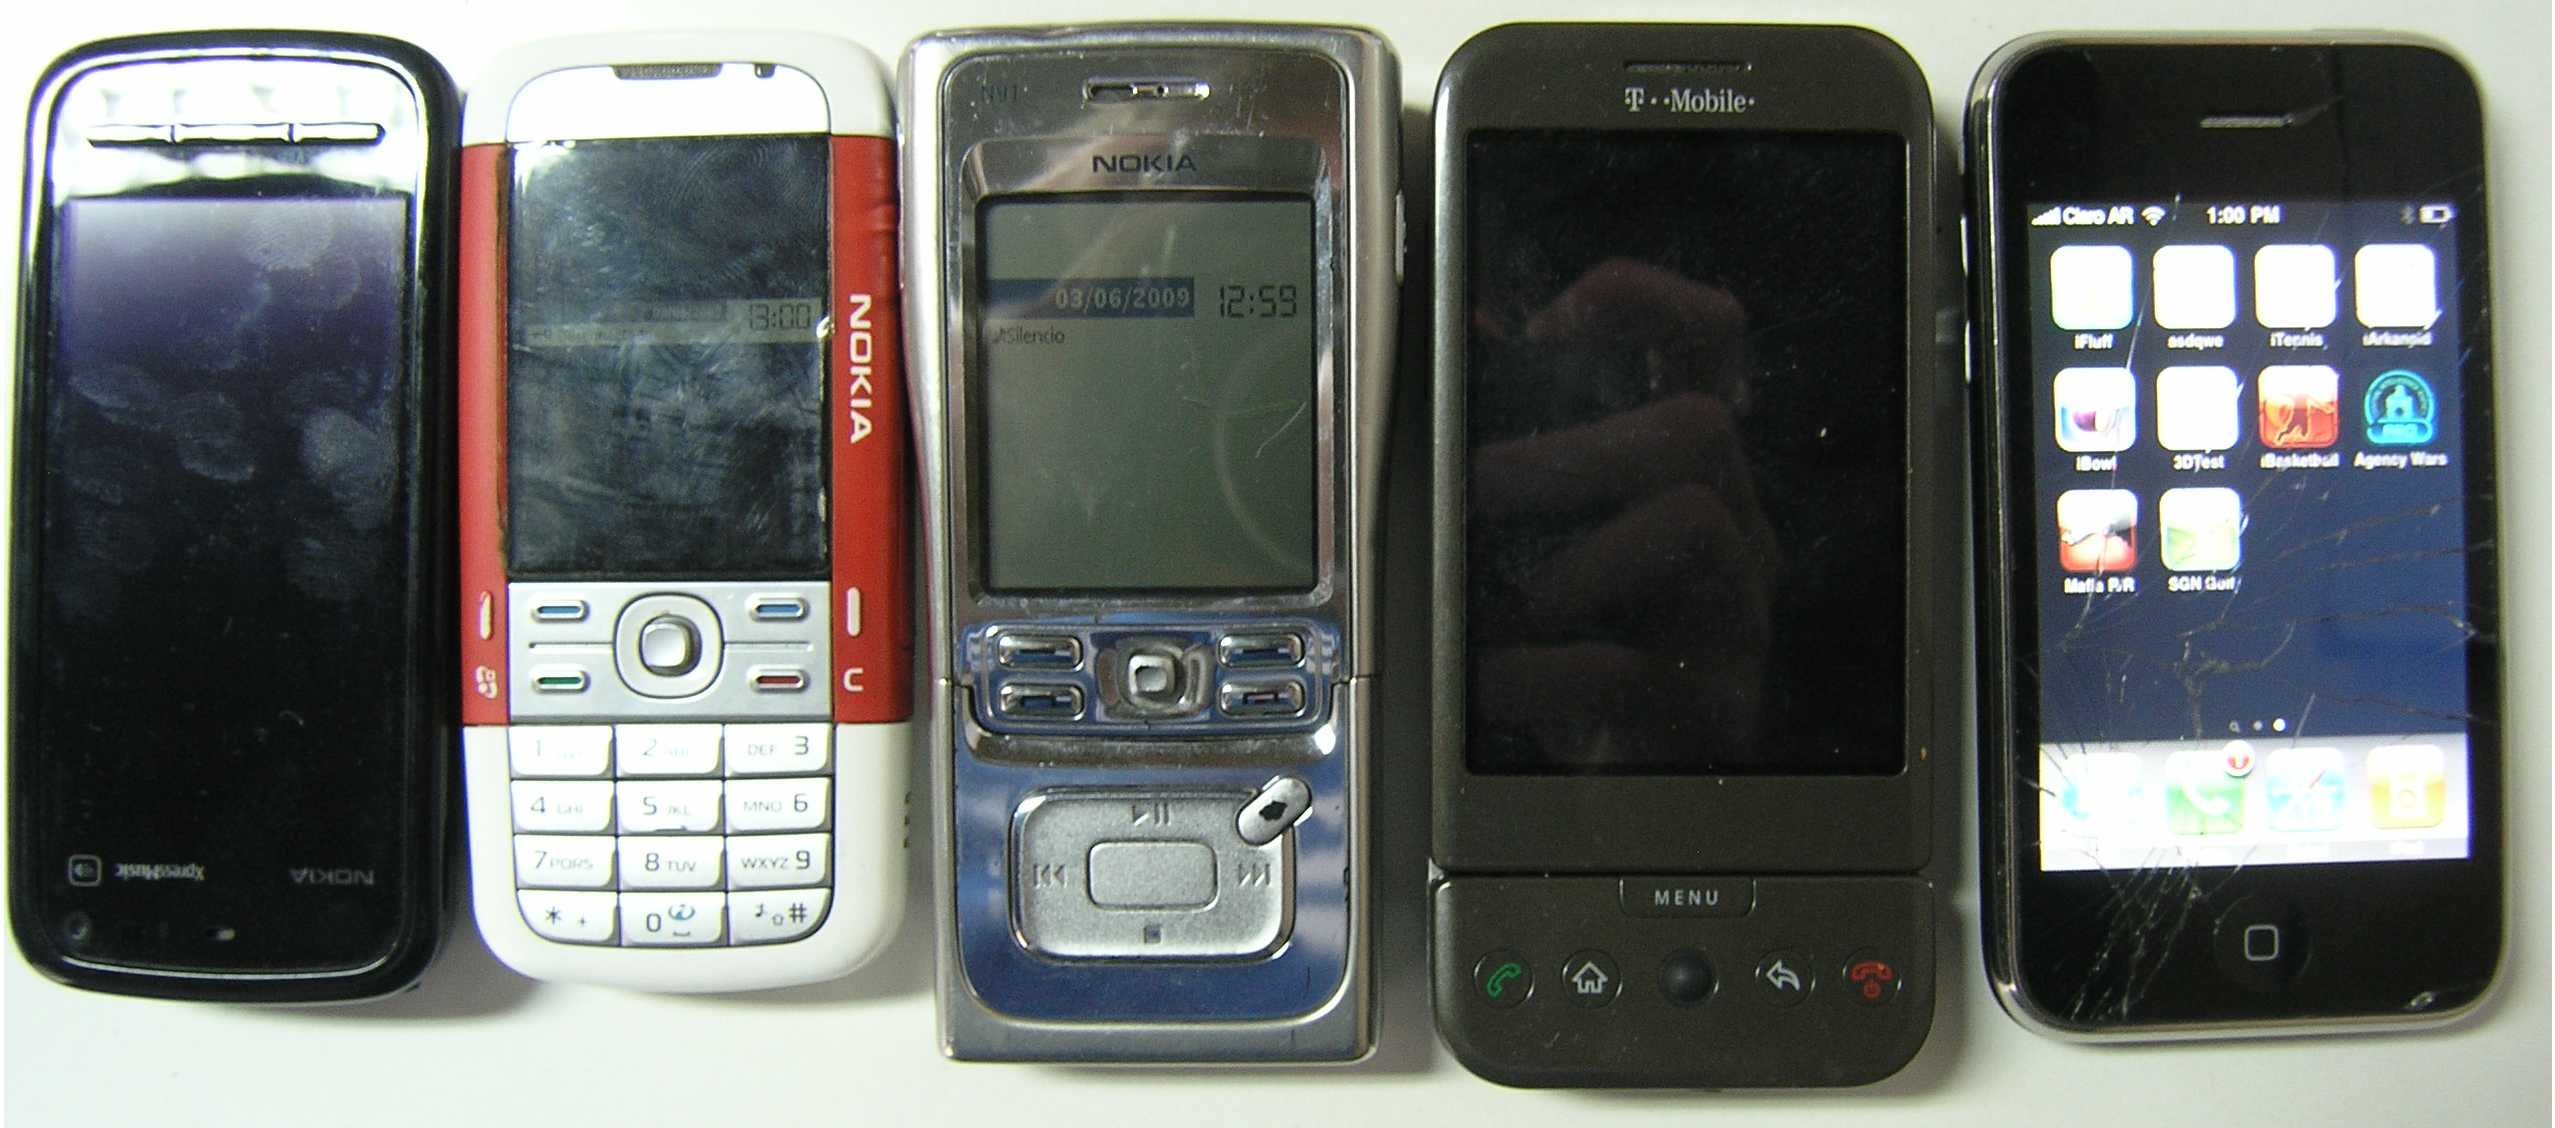 Nokia5800 Tamanio2